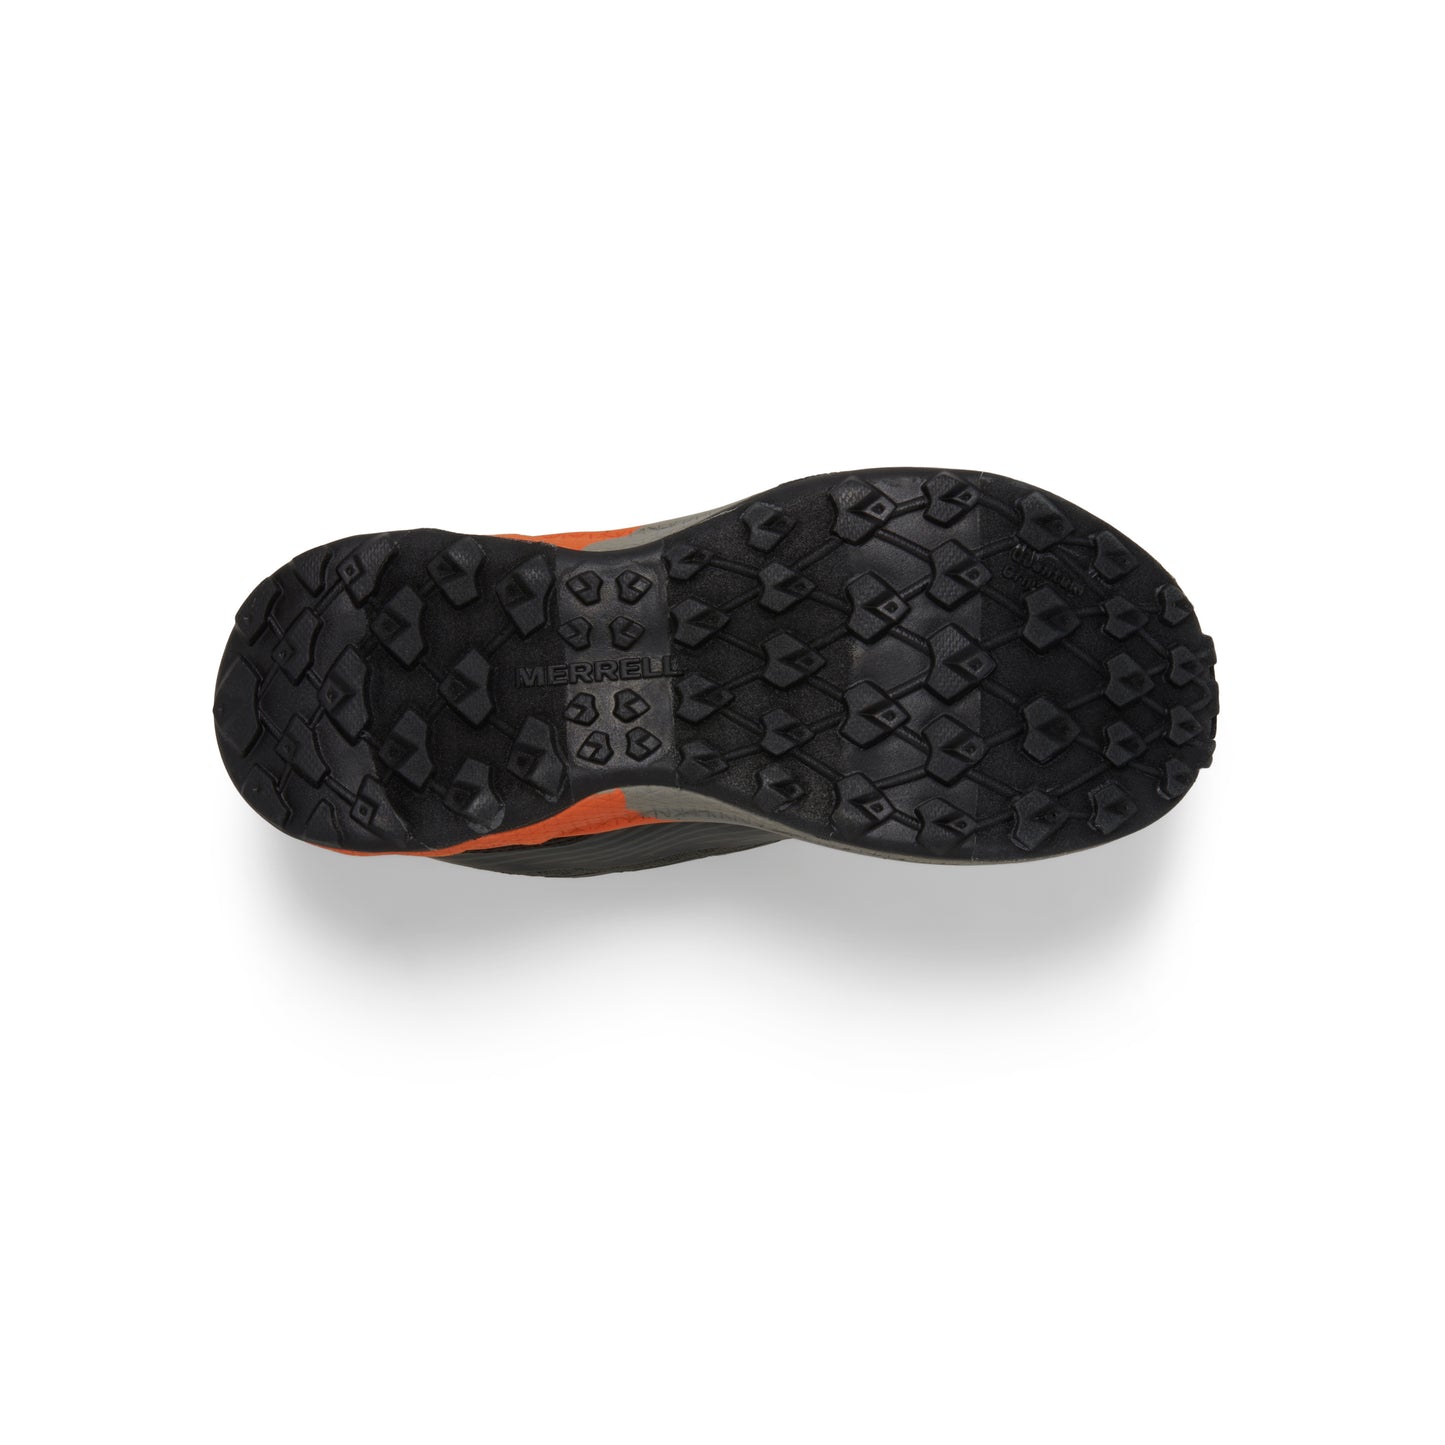 agility-peak-sneaker-bigkid-olive-black-orange__Olive/Black/Orange_7